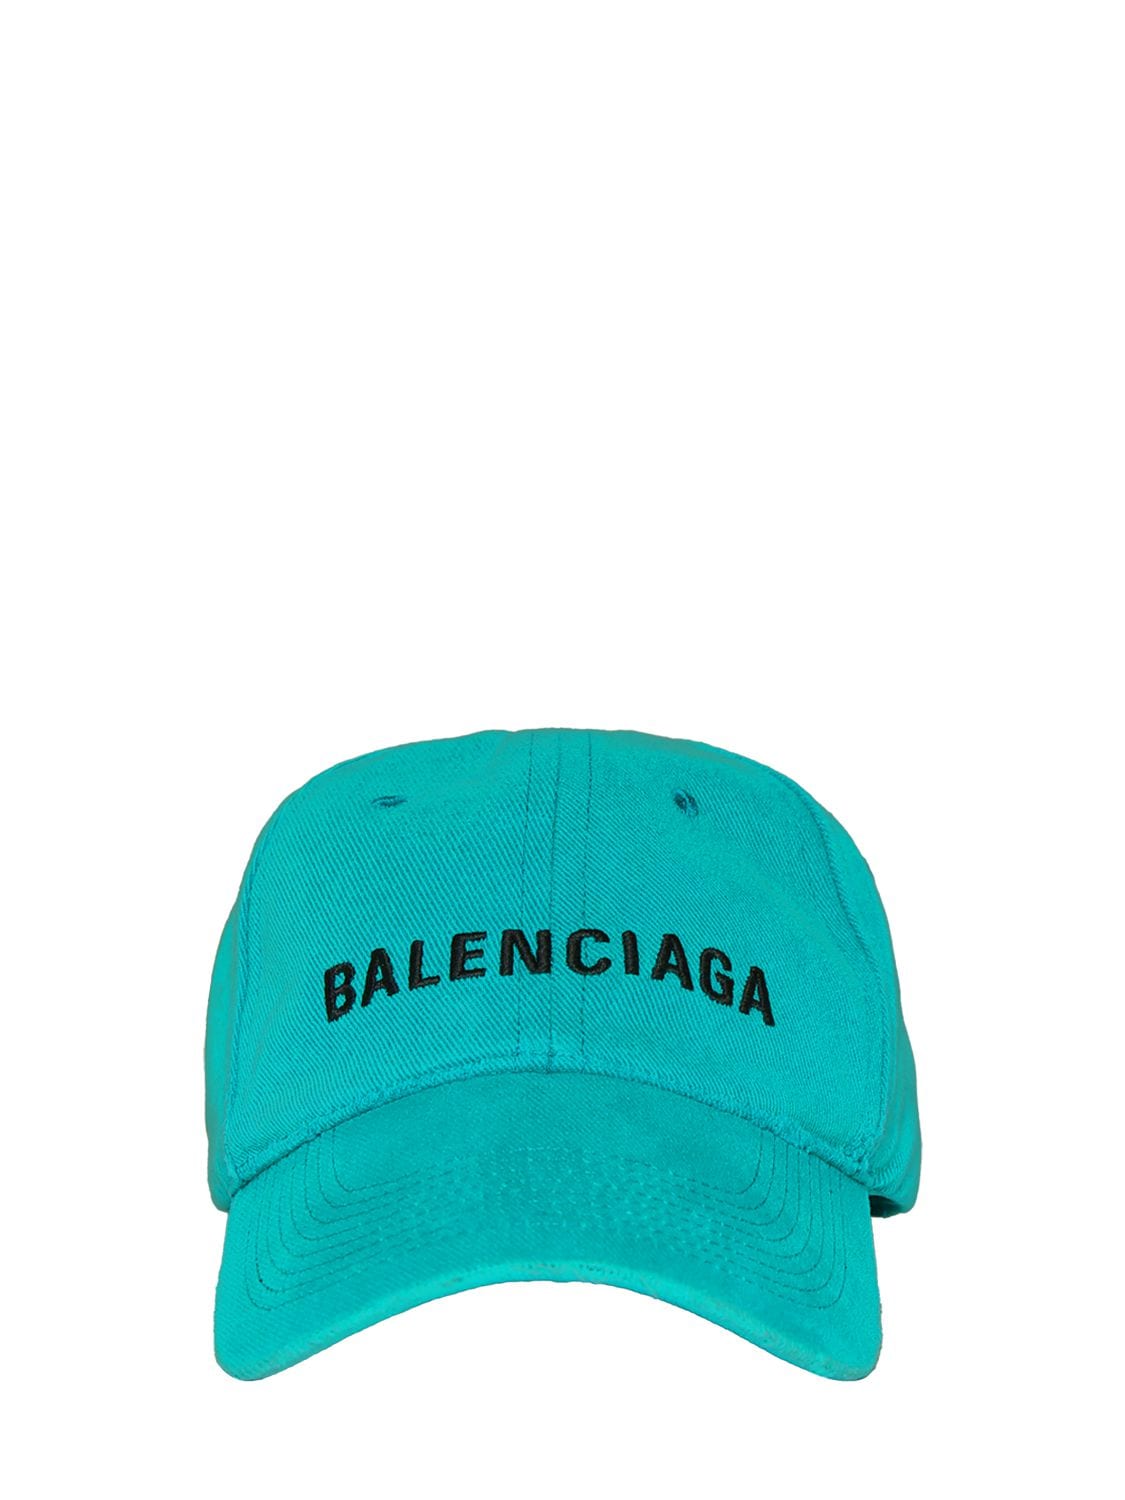 BALENCIAGA Cap for Men | ModeSens